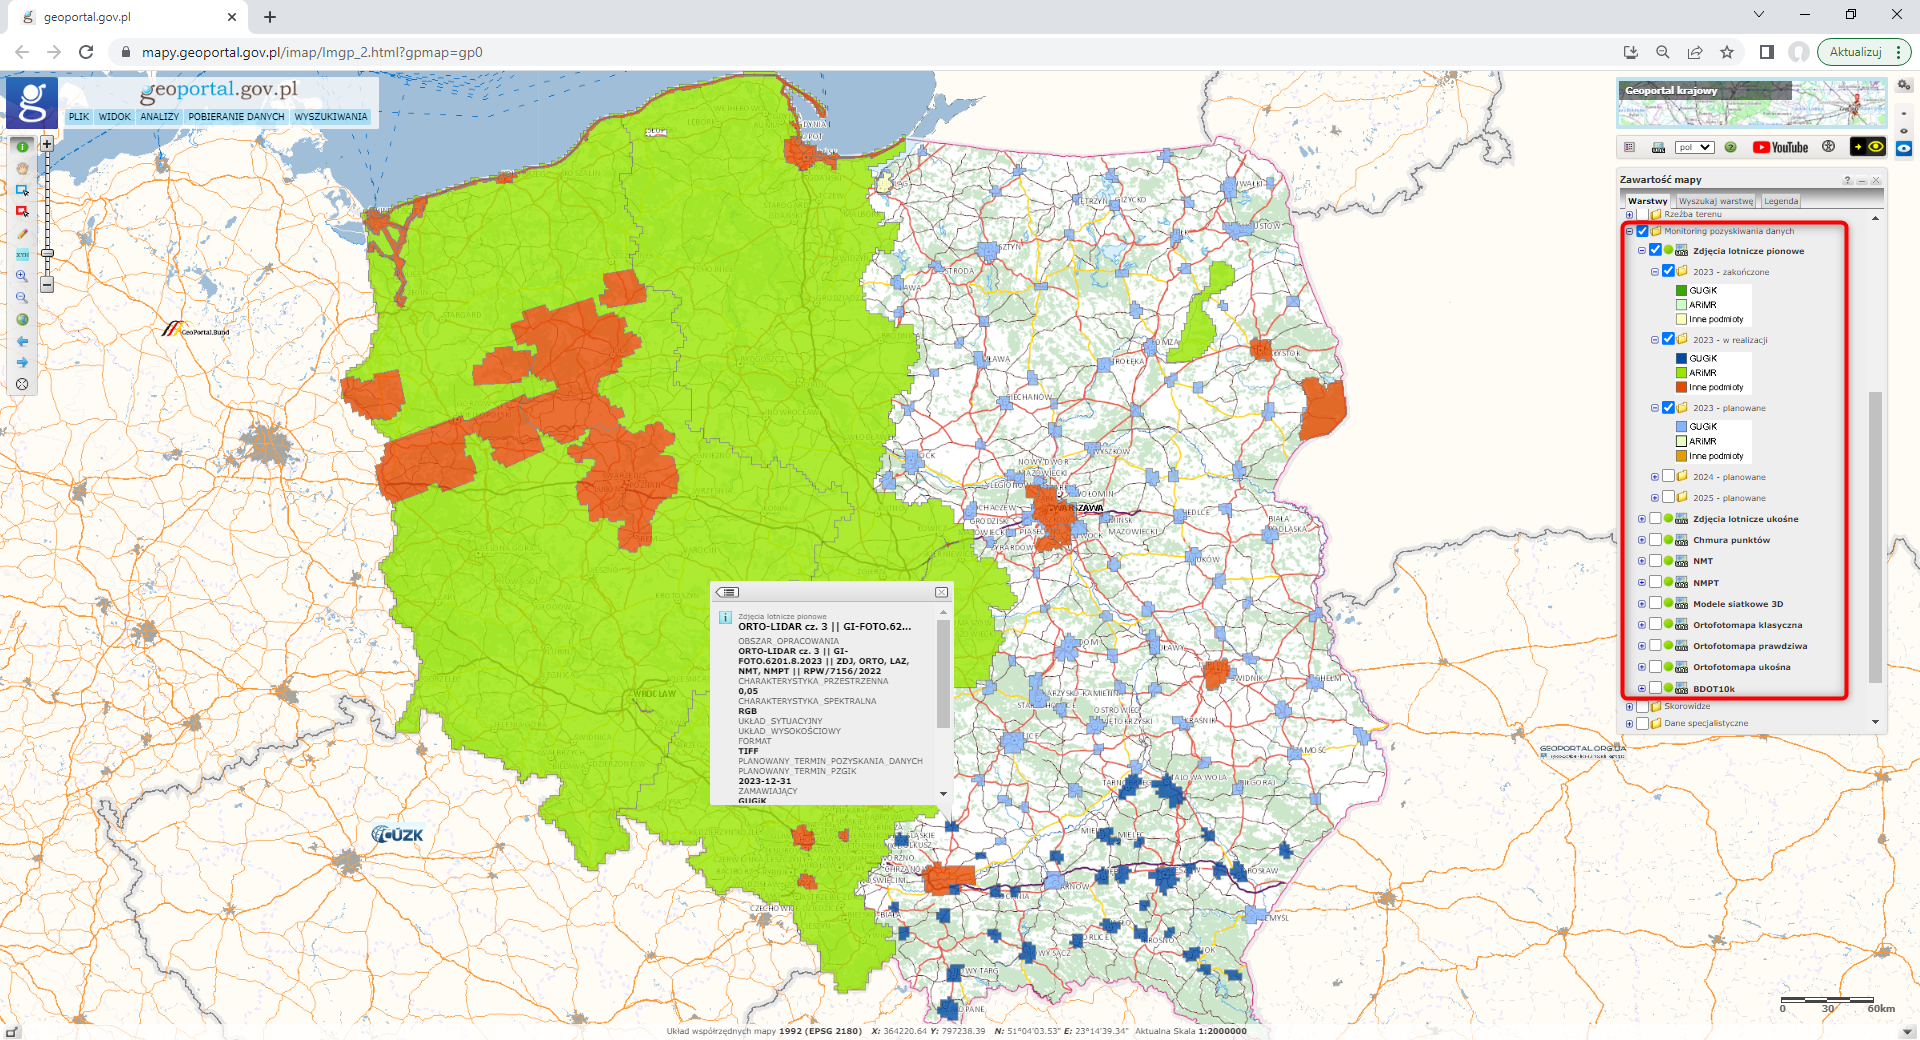 zrzut ekranu z serwisu www.geoportal.gov.pl prezentujący zmieniony Monitoring pozyskiwania danych.